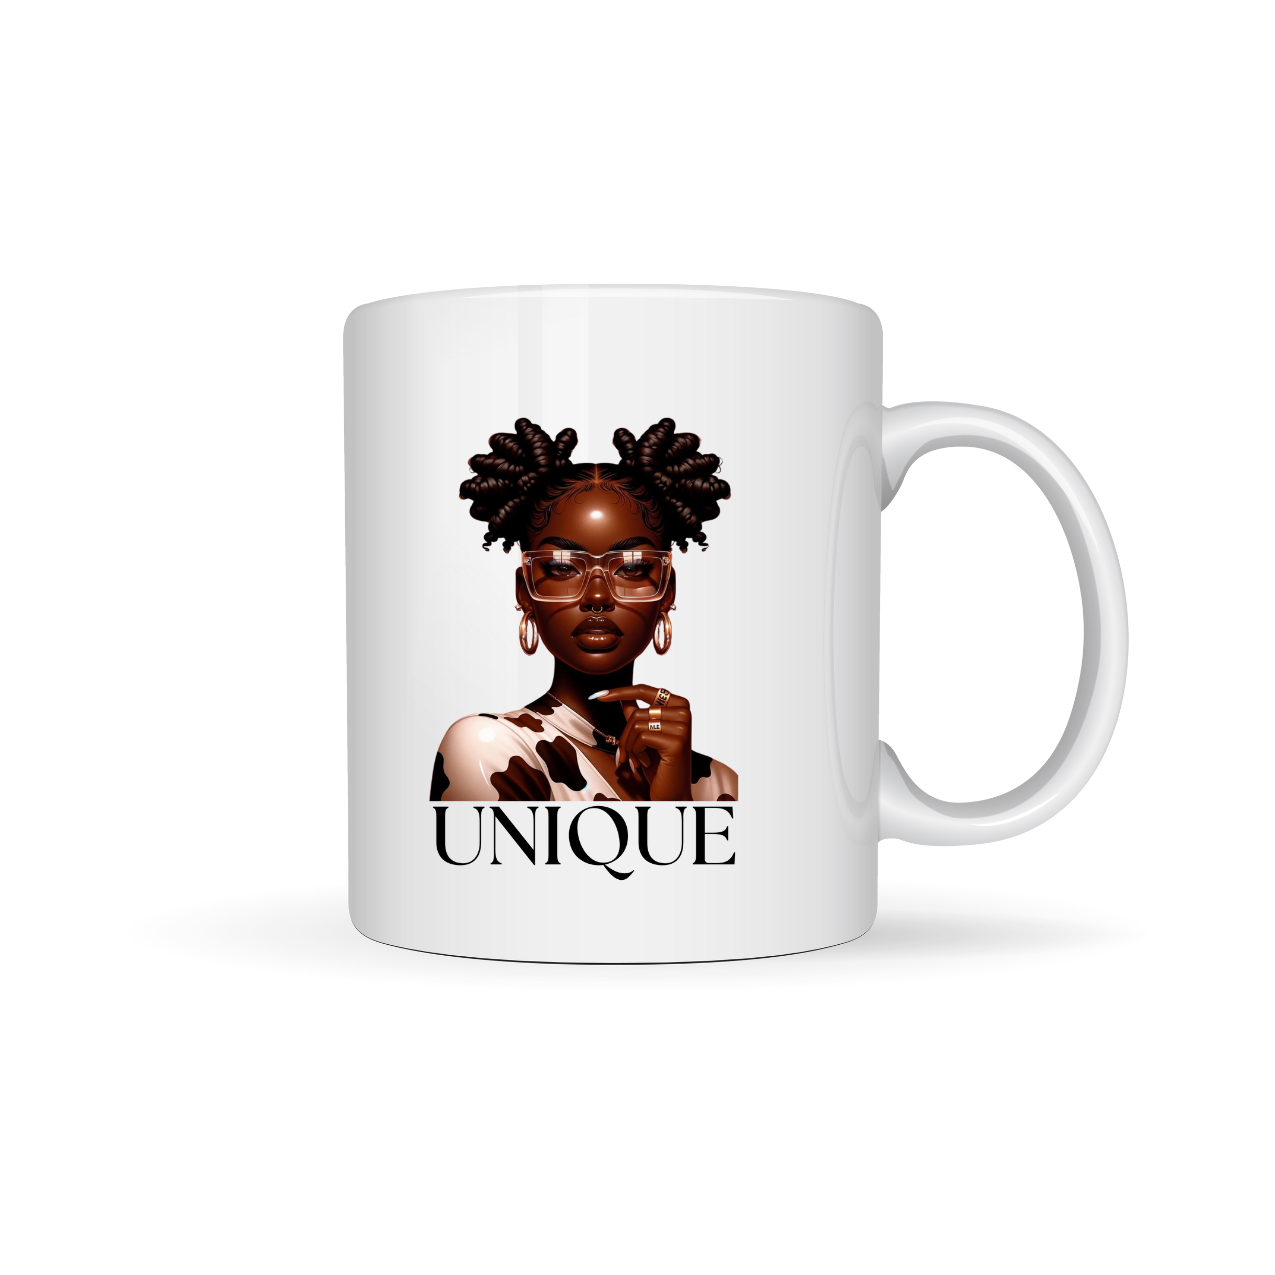 "UNIQUE" Mug